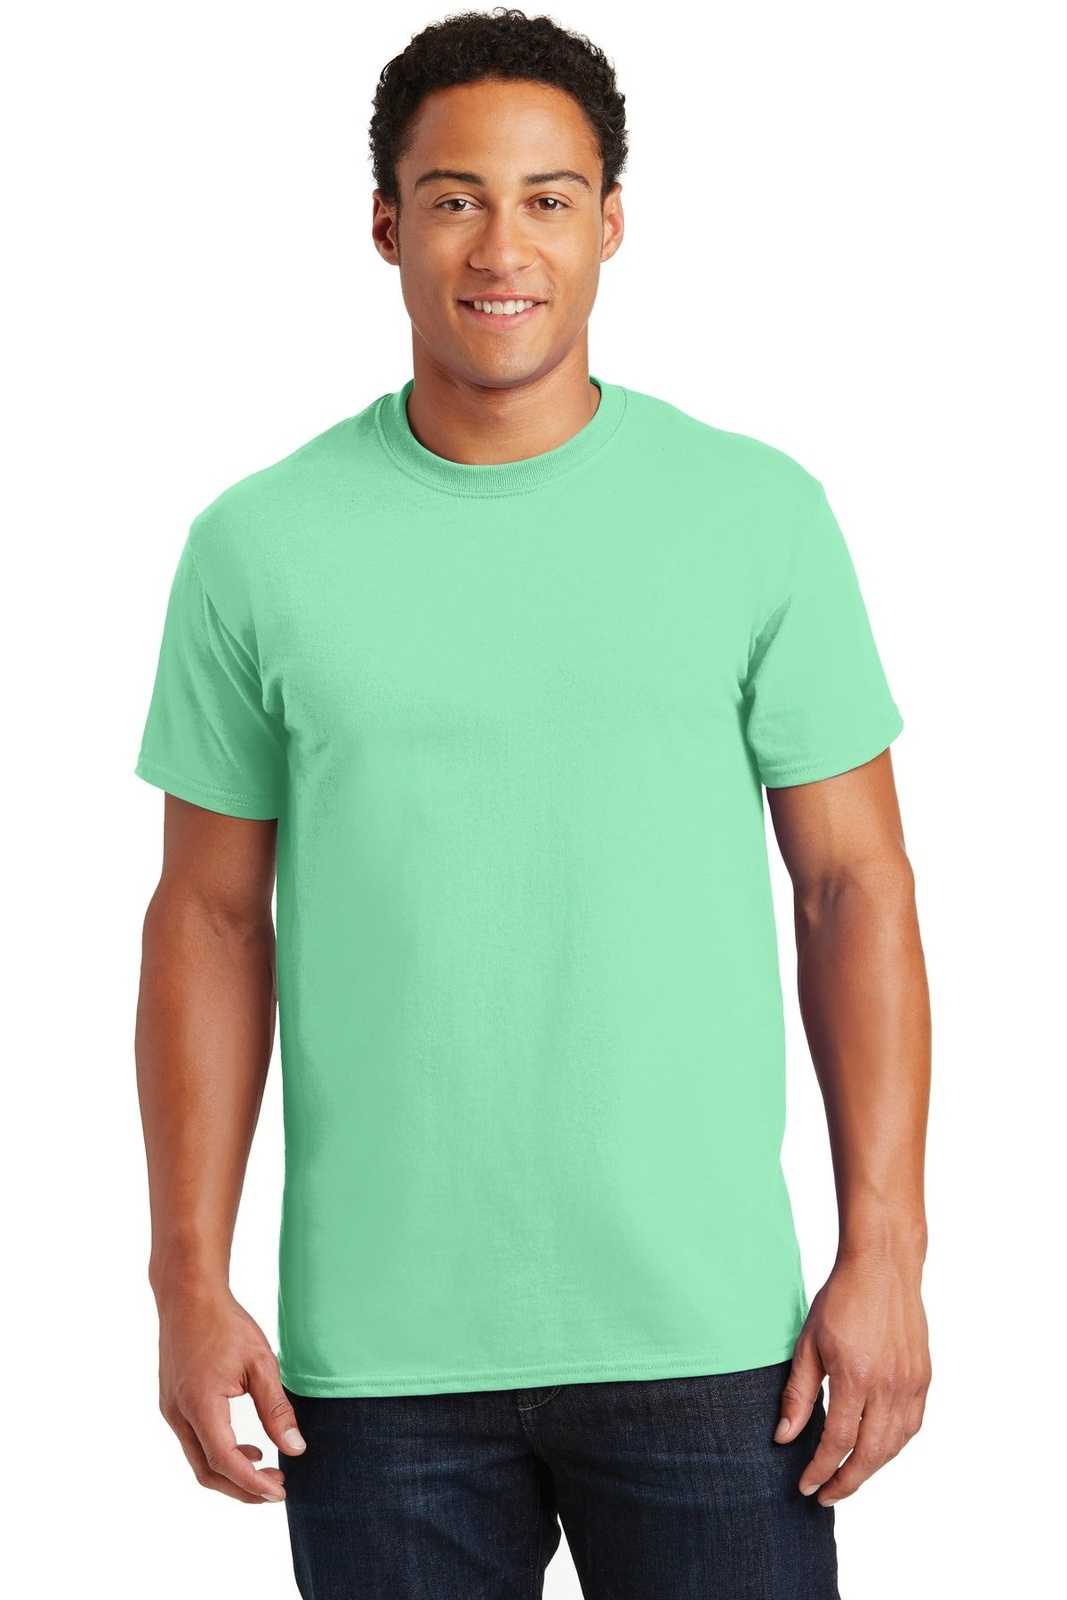 Gildan 2000 Ultra Cotton 100% Cotton T-Shirt - Mint Green - HIT a Double